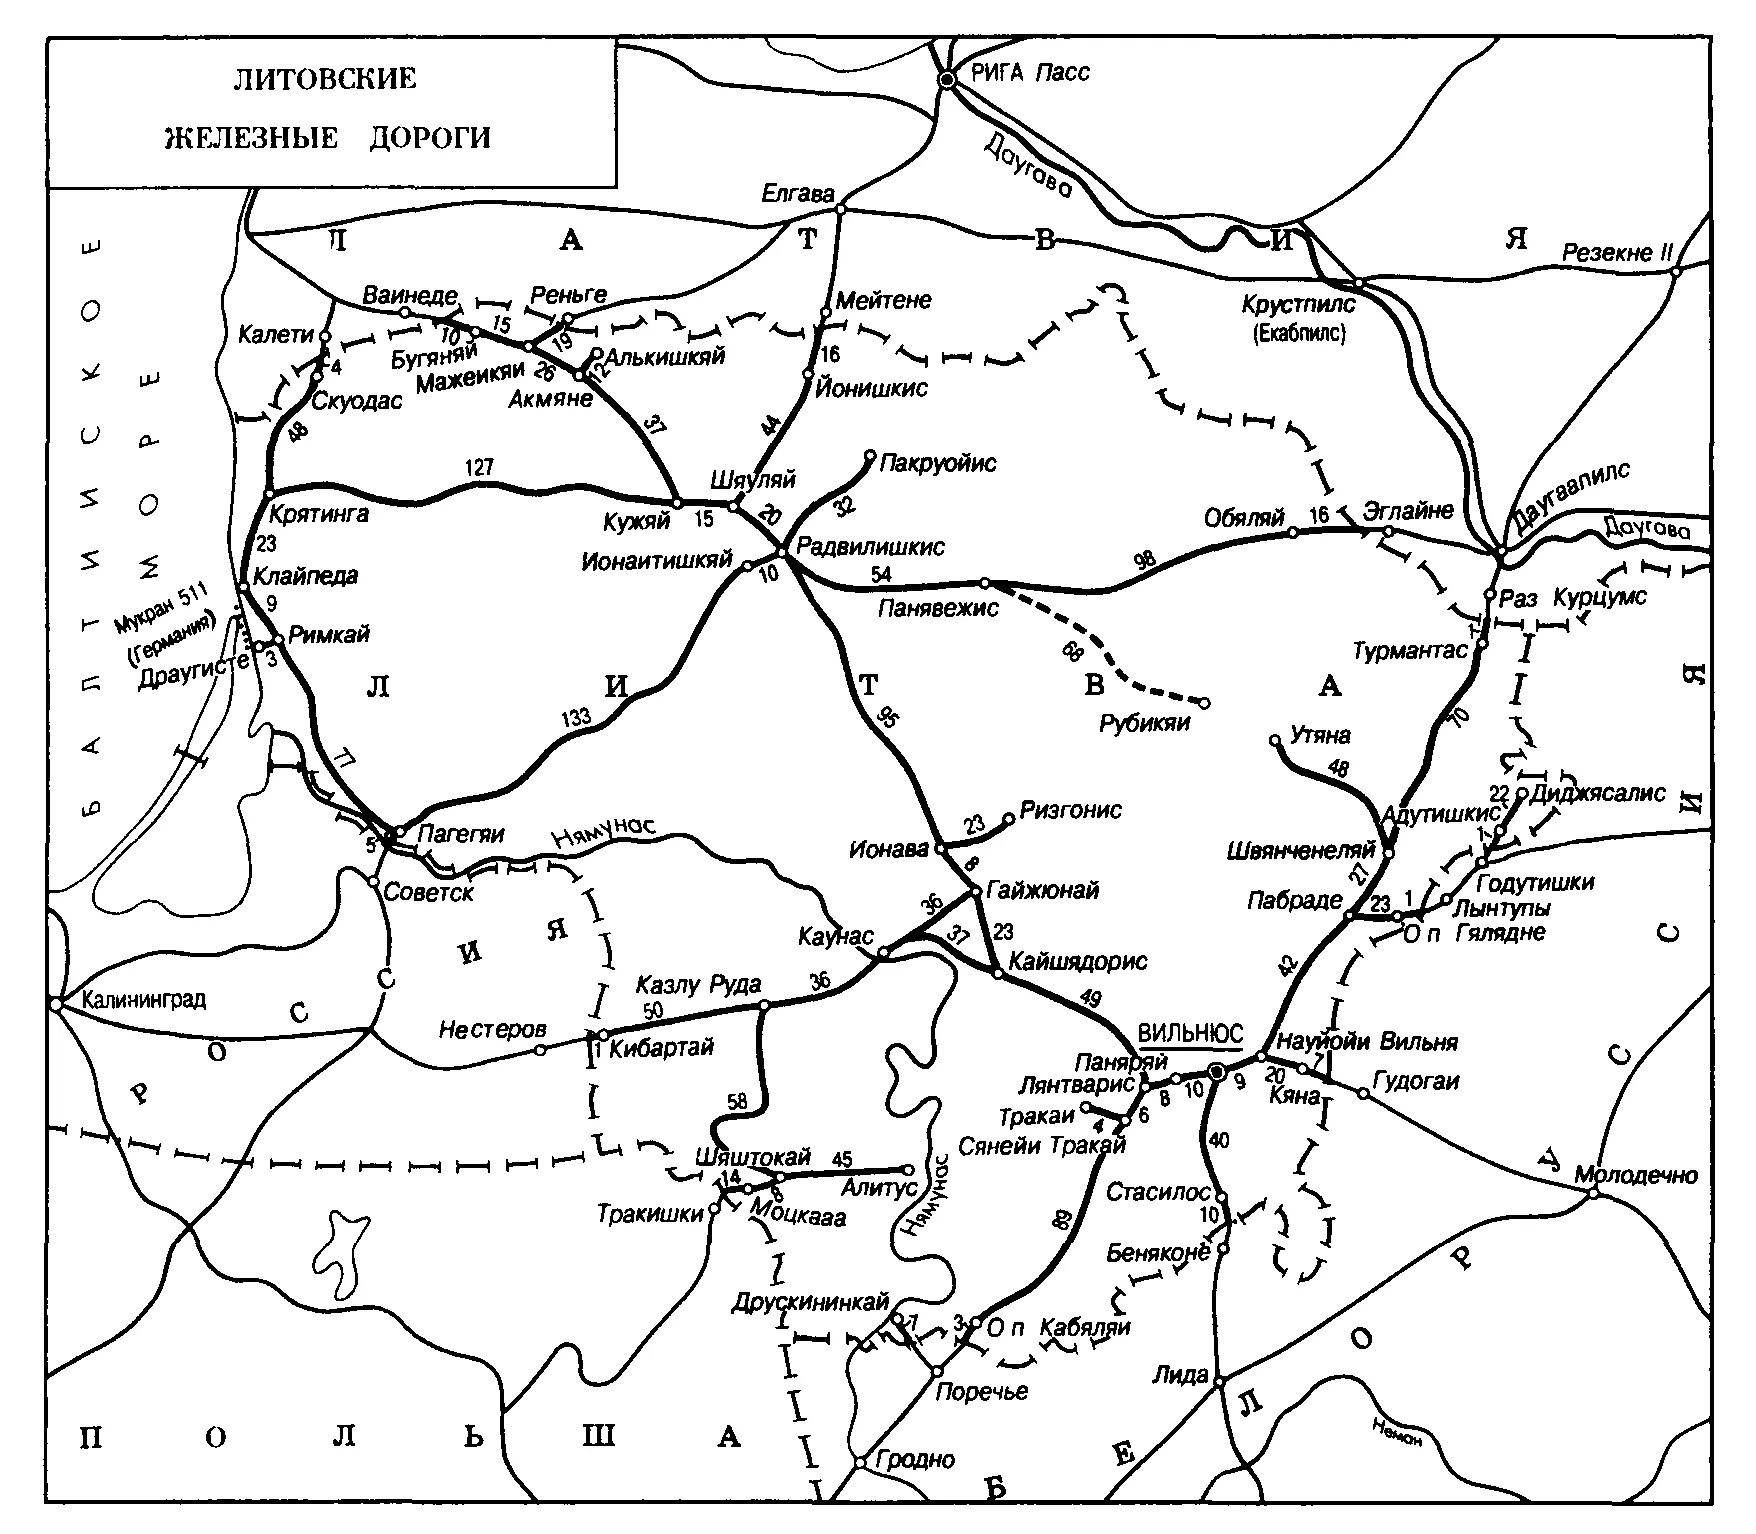 Жд дороги на карте. Карта железных дорог Литвы. Карта ЖД дорог Литвы. Литовские железные дороги схема. ЖД пути Литвы на карте.